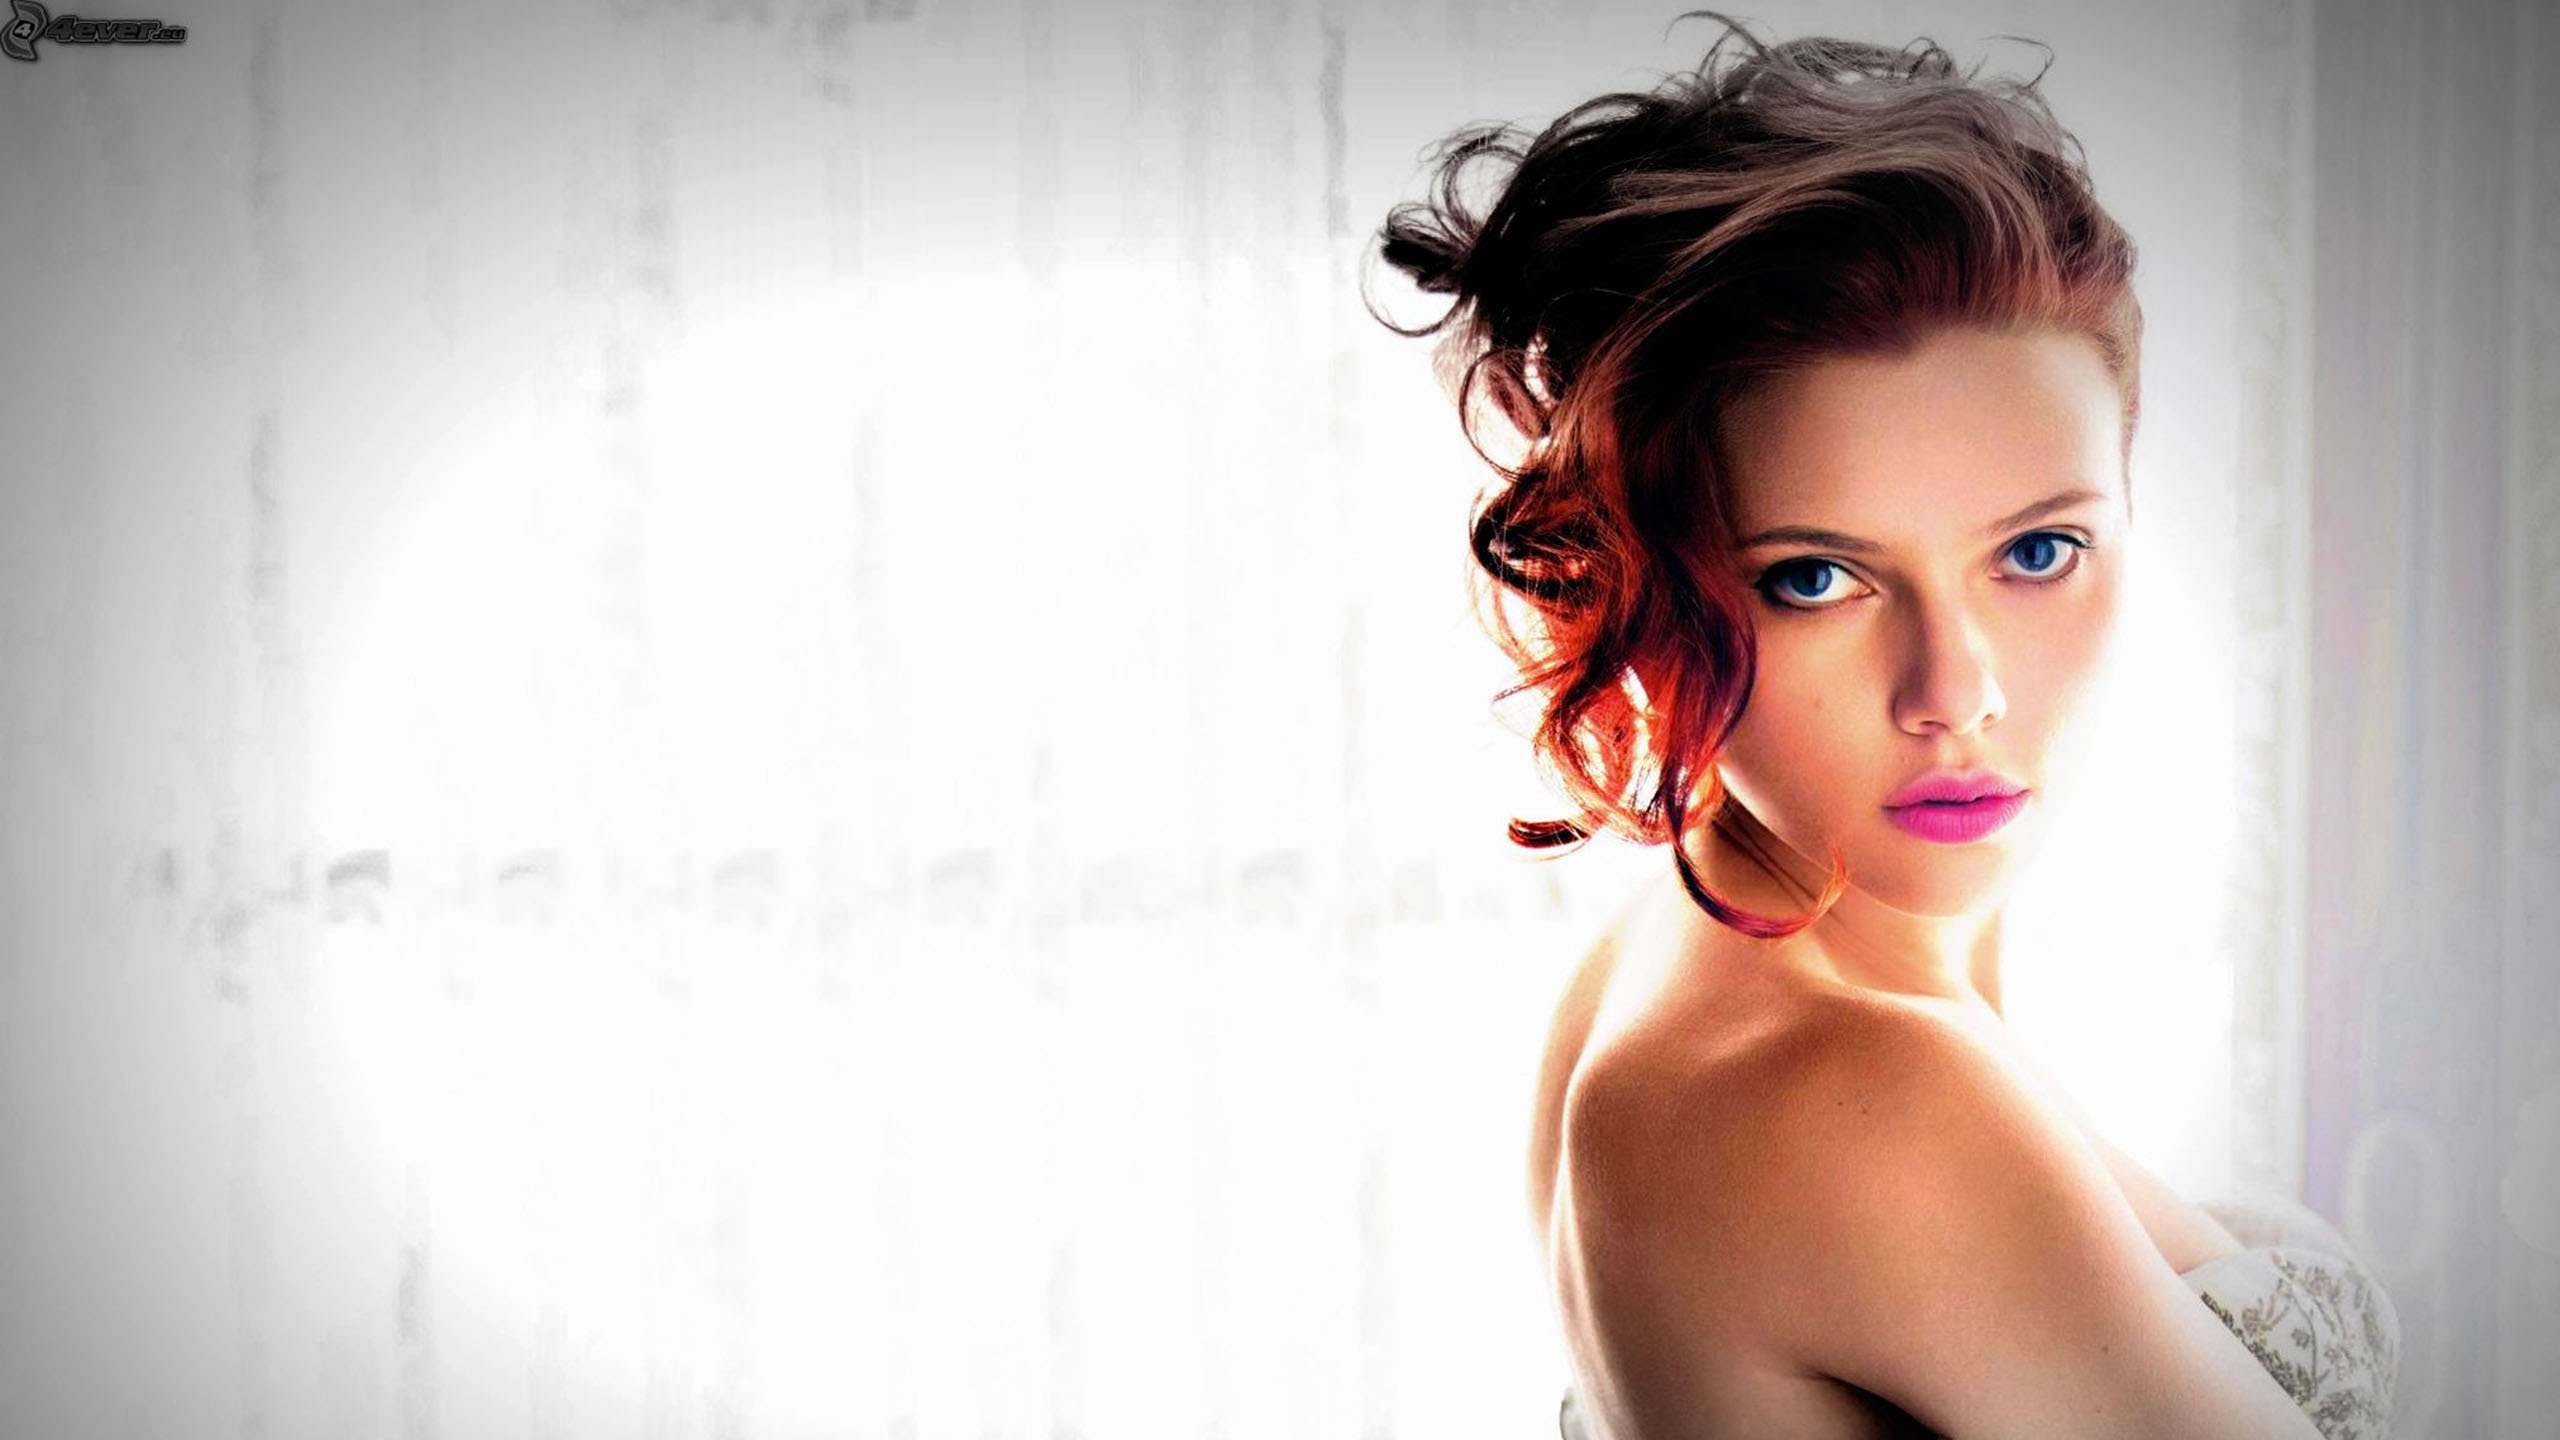 Scarlett Johansson Blue Eyes for 2560x1440 HDTV resolution